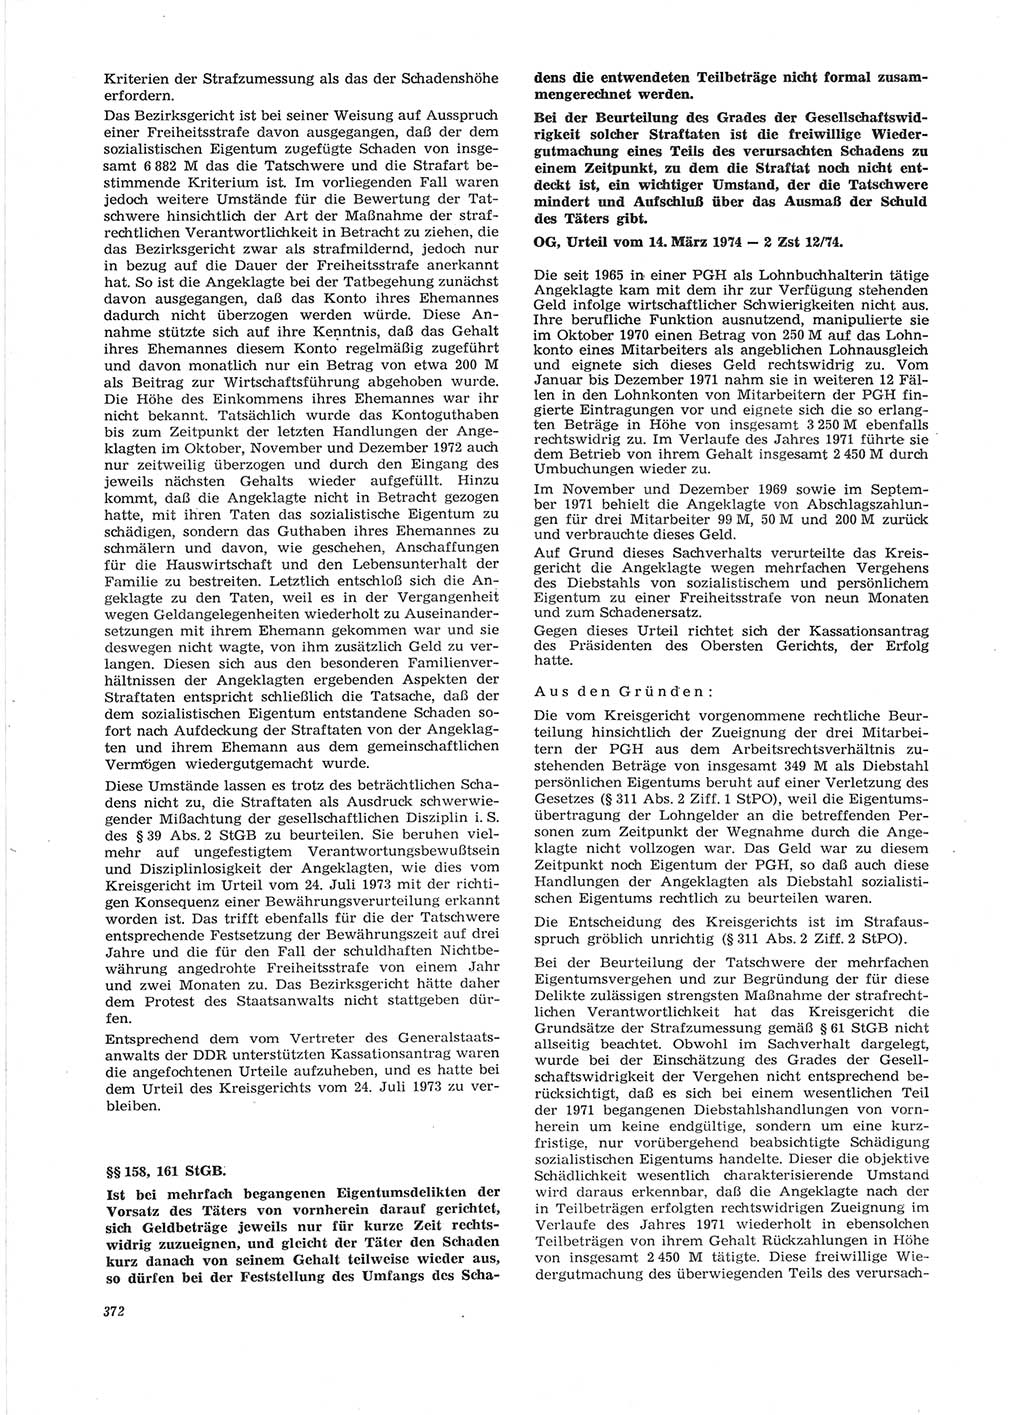 Neue Justiz (NJ), Zeitschrift für Recht und Rechtswissenschaft [Deutsche Demokratische Republik (DDR)], 28. Jahrgang 1974, Seite 372 (NJ DDR 1974, S. 372)